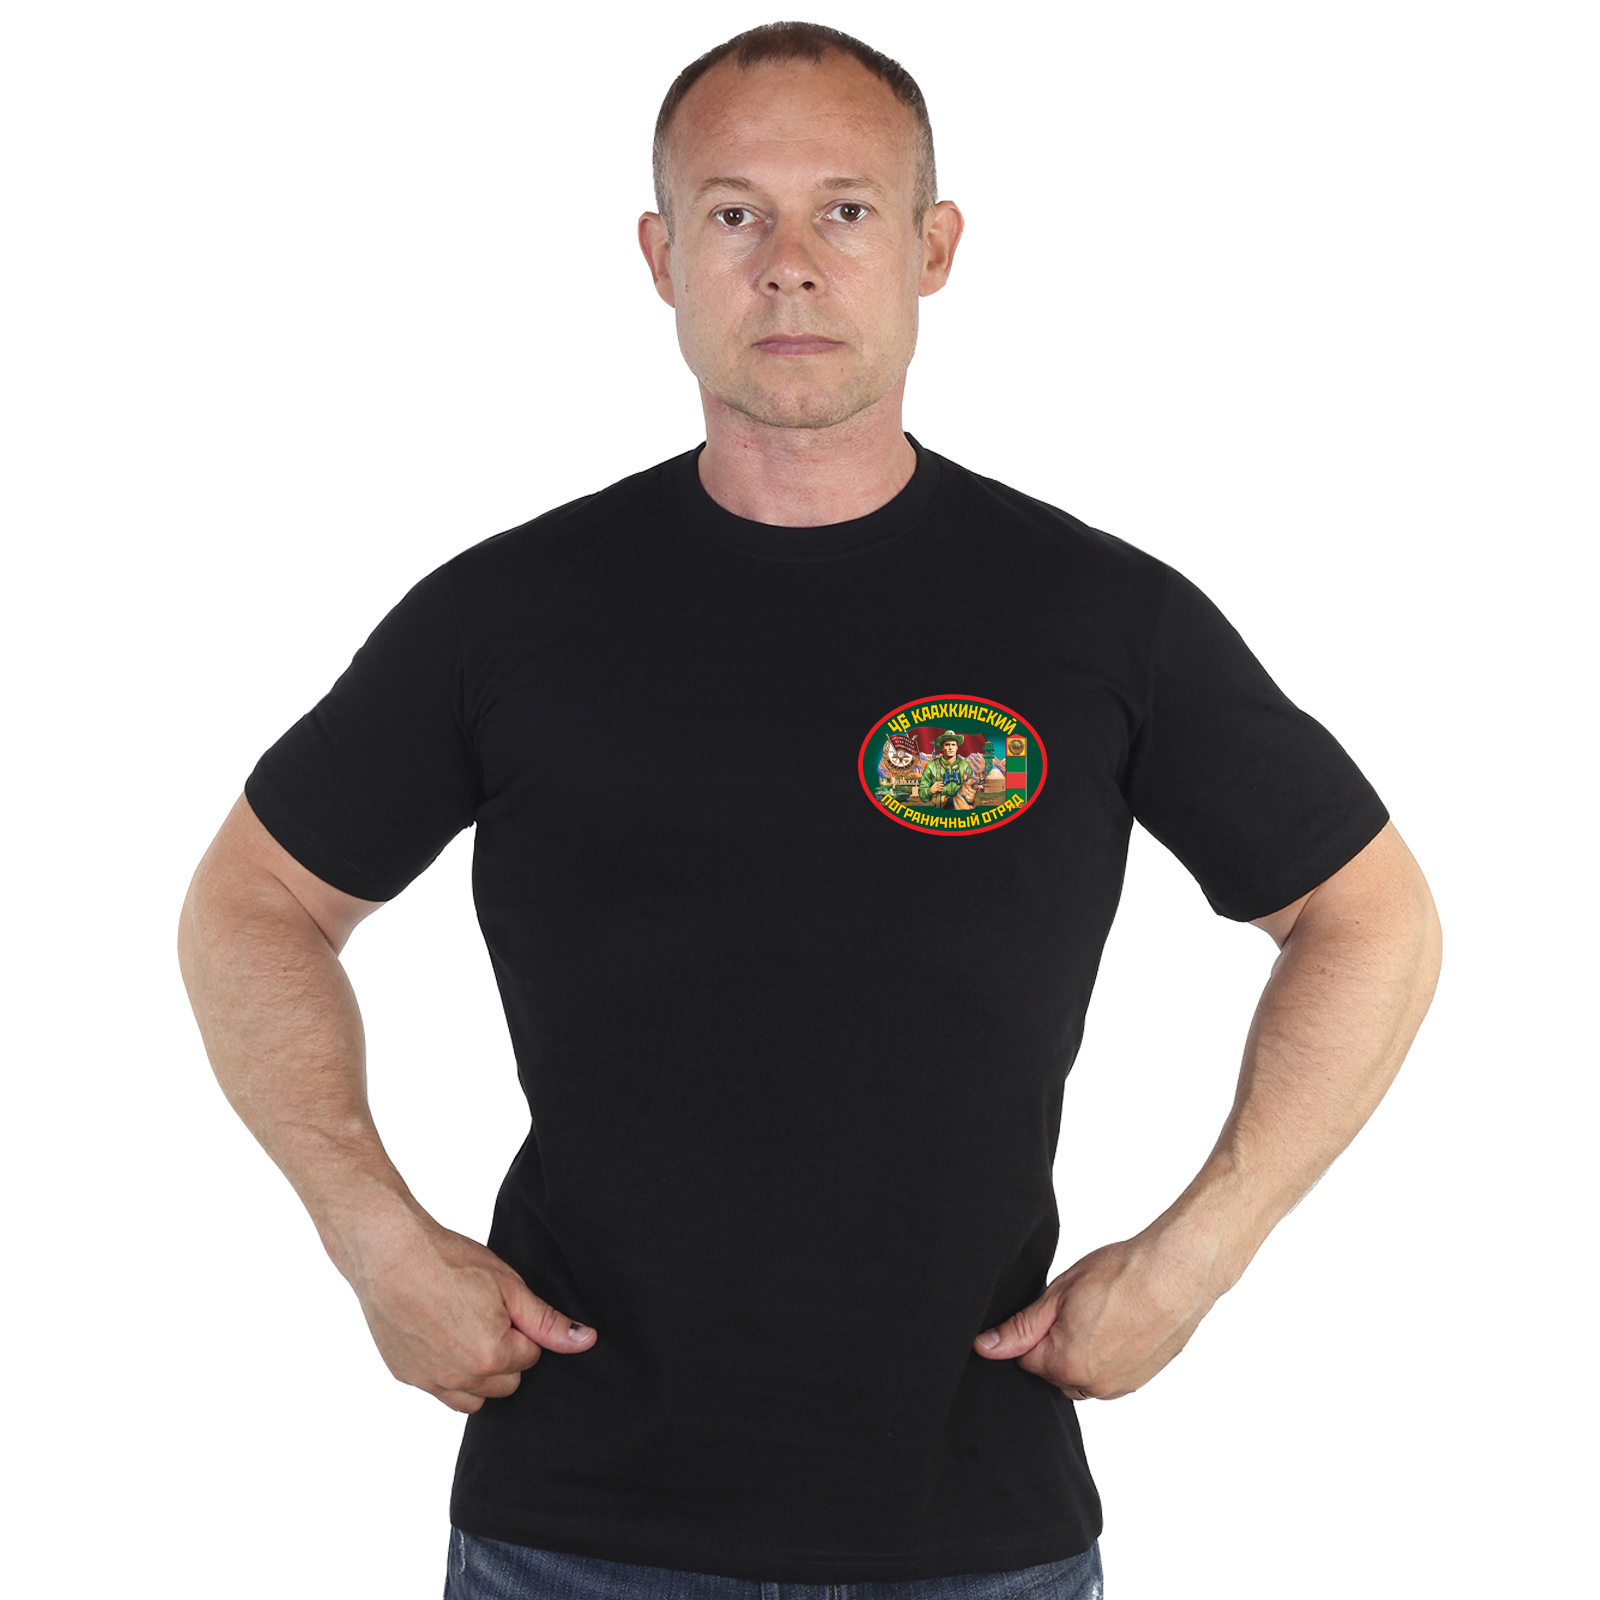 Купить в интернете футболку 46 Каахкинский пограничный отряд